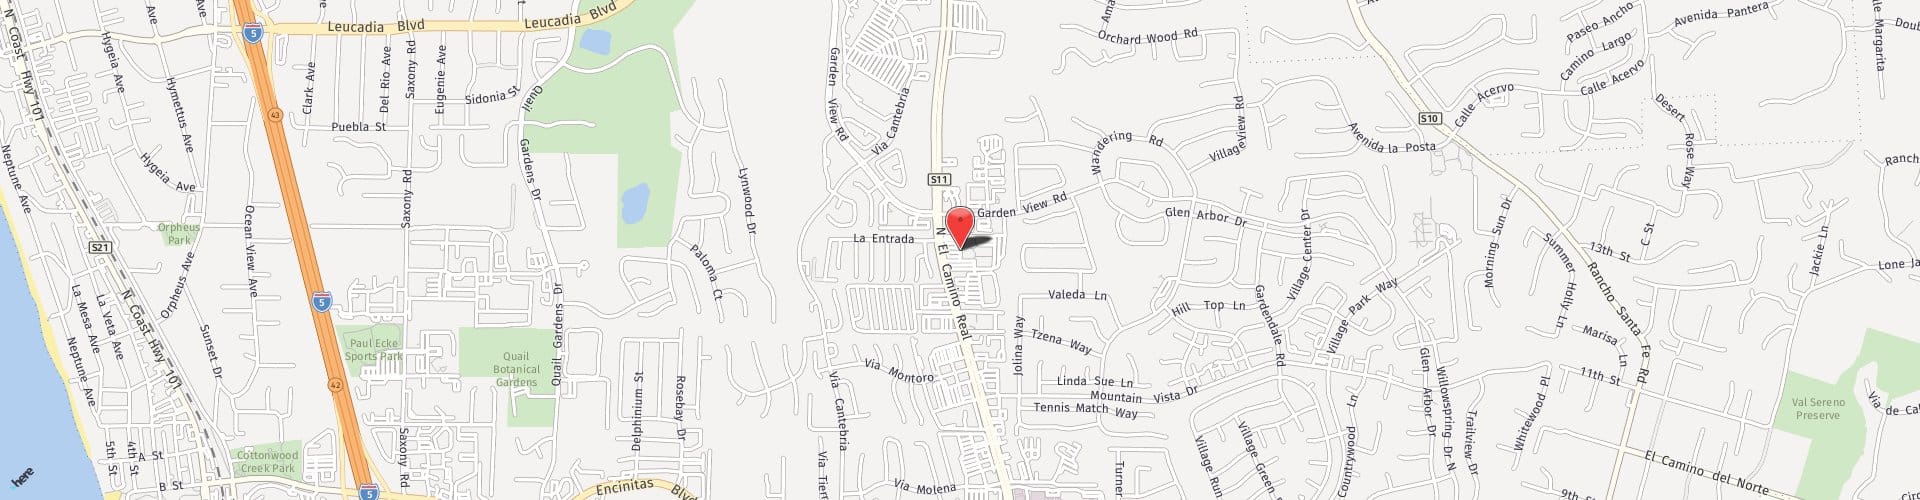 Location Map: 477 N. El Camino Real Encinitas, CA 92024